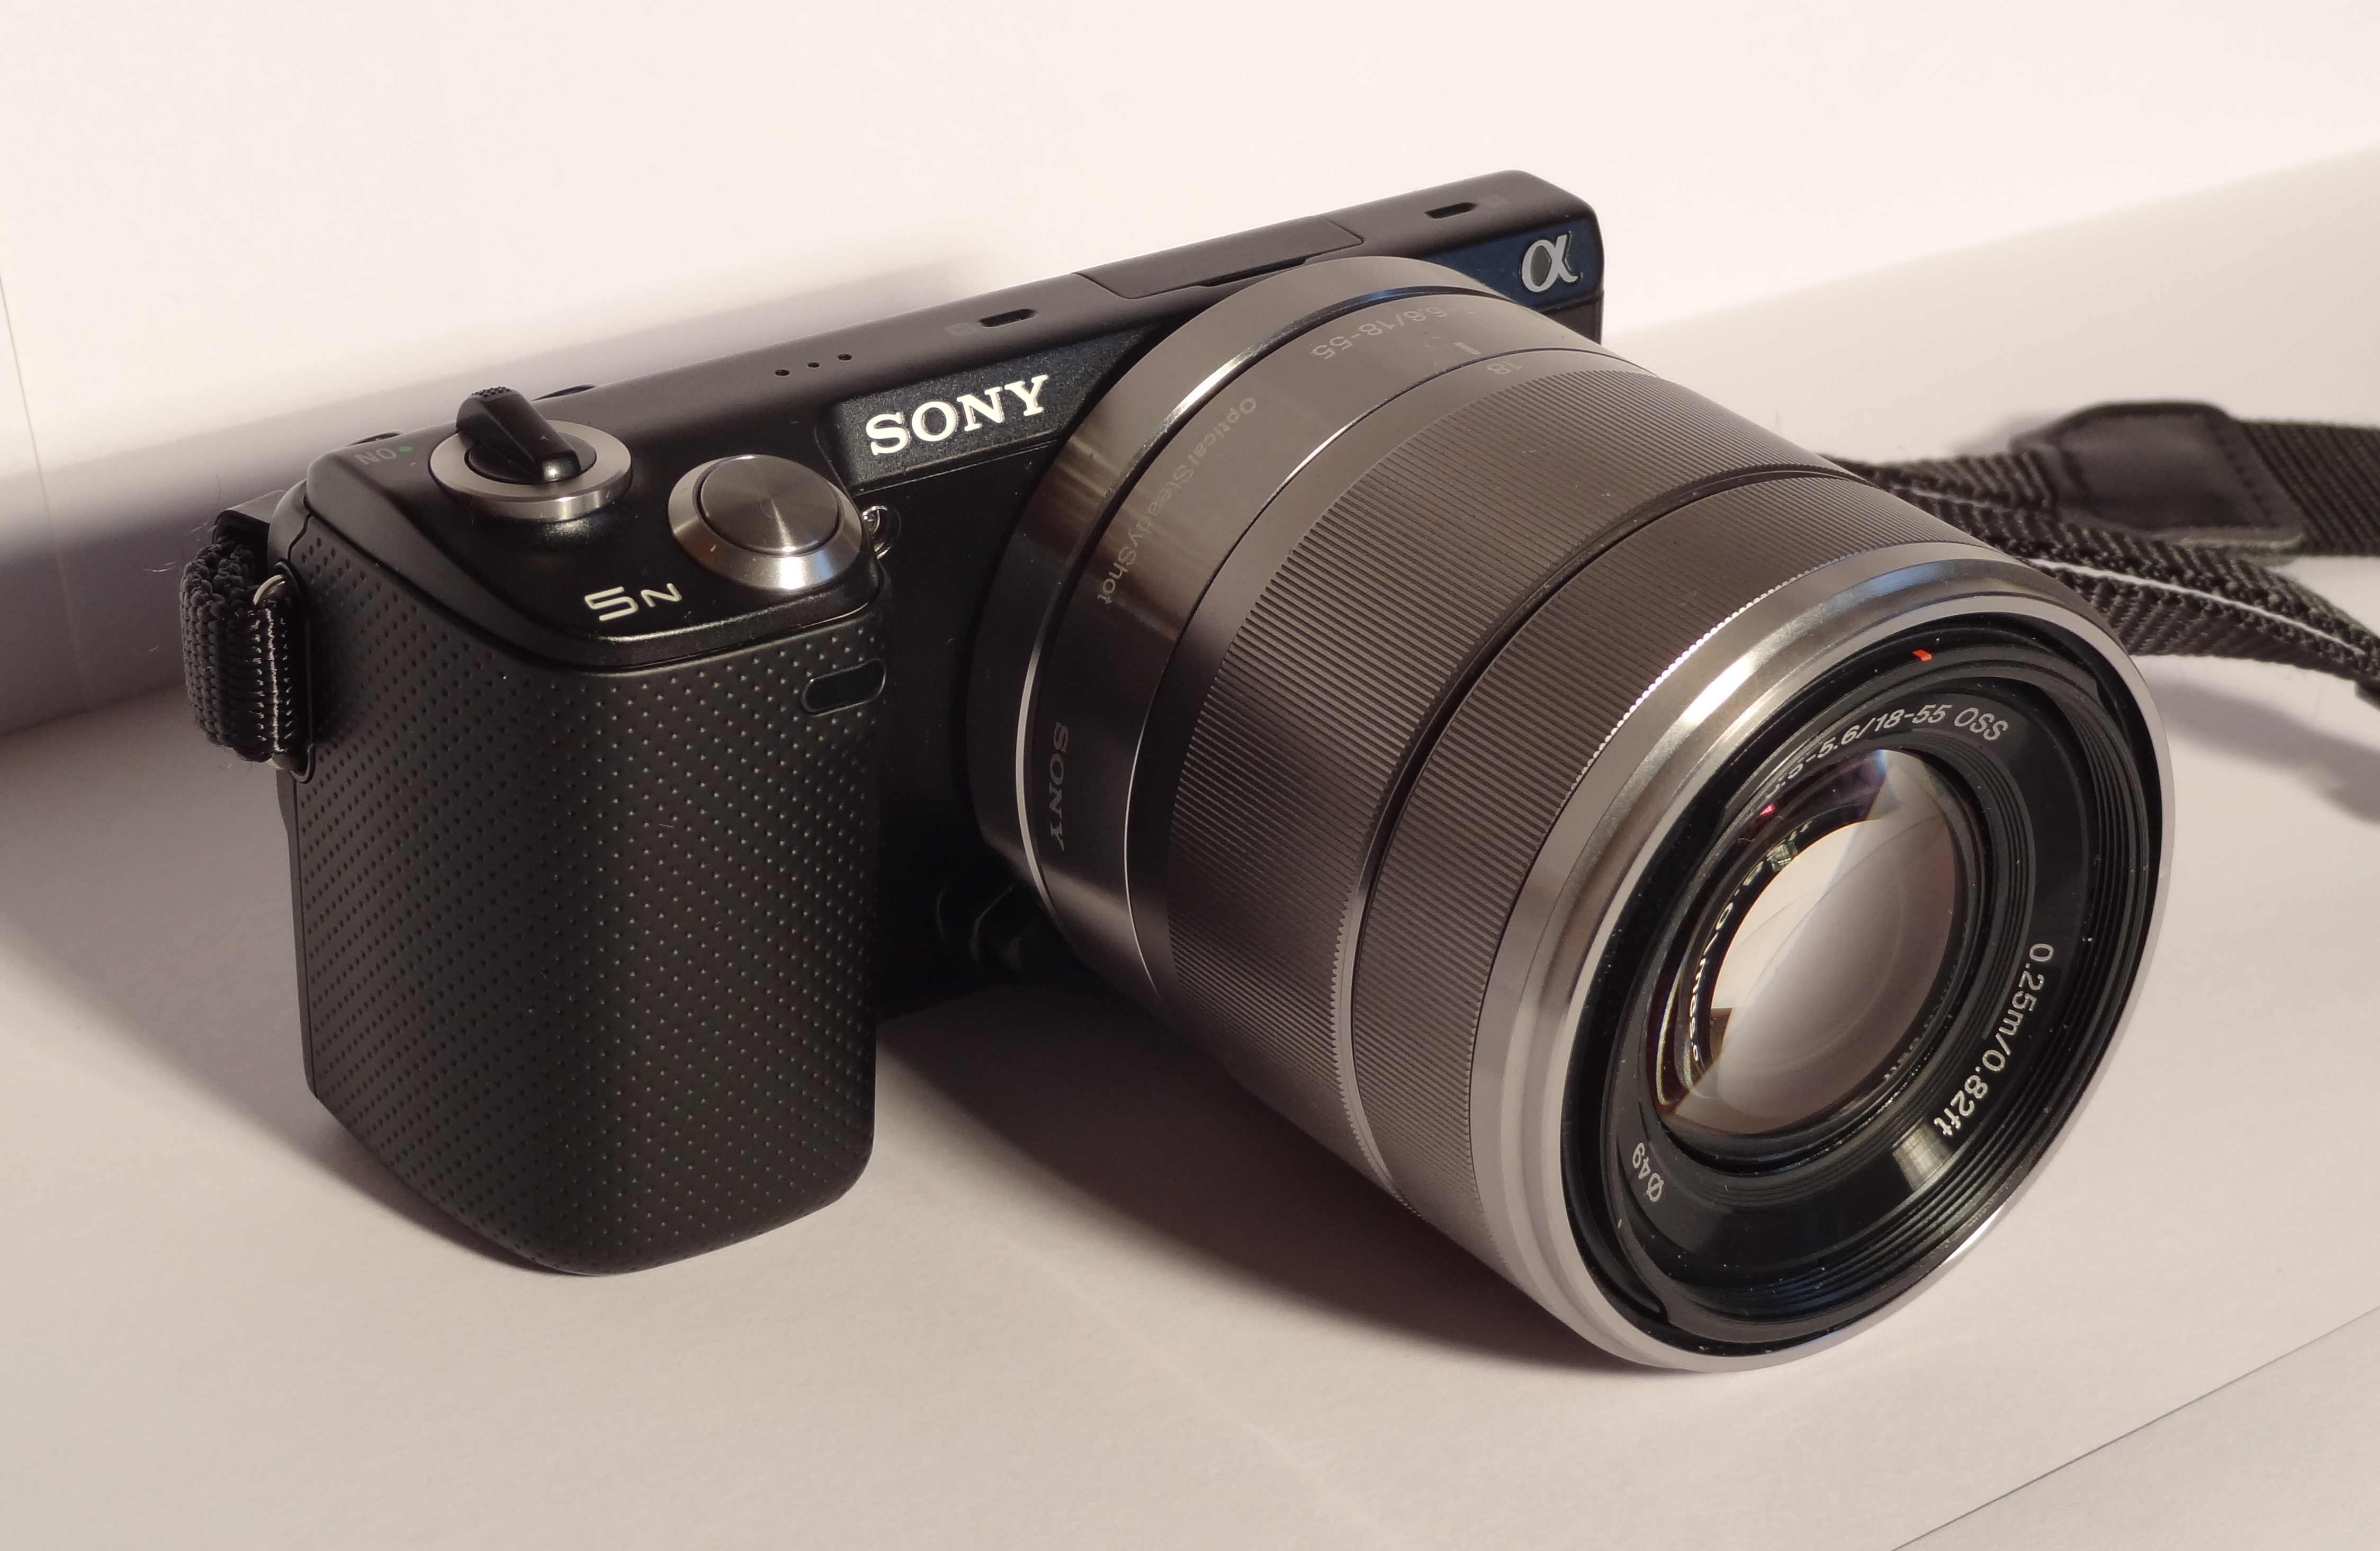 Sony NEX-5N with 18-55